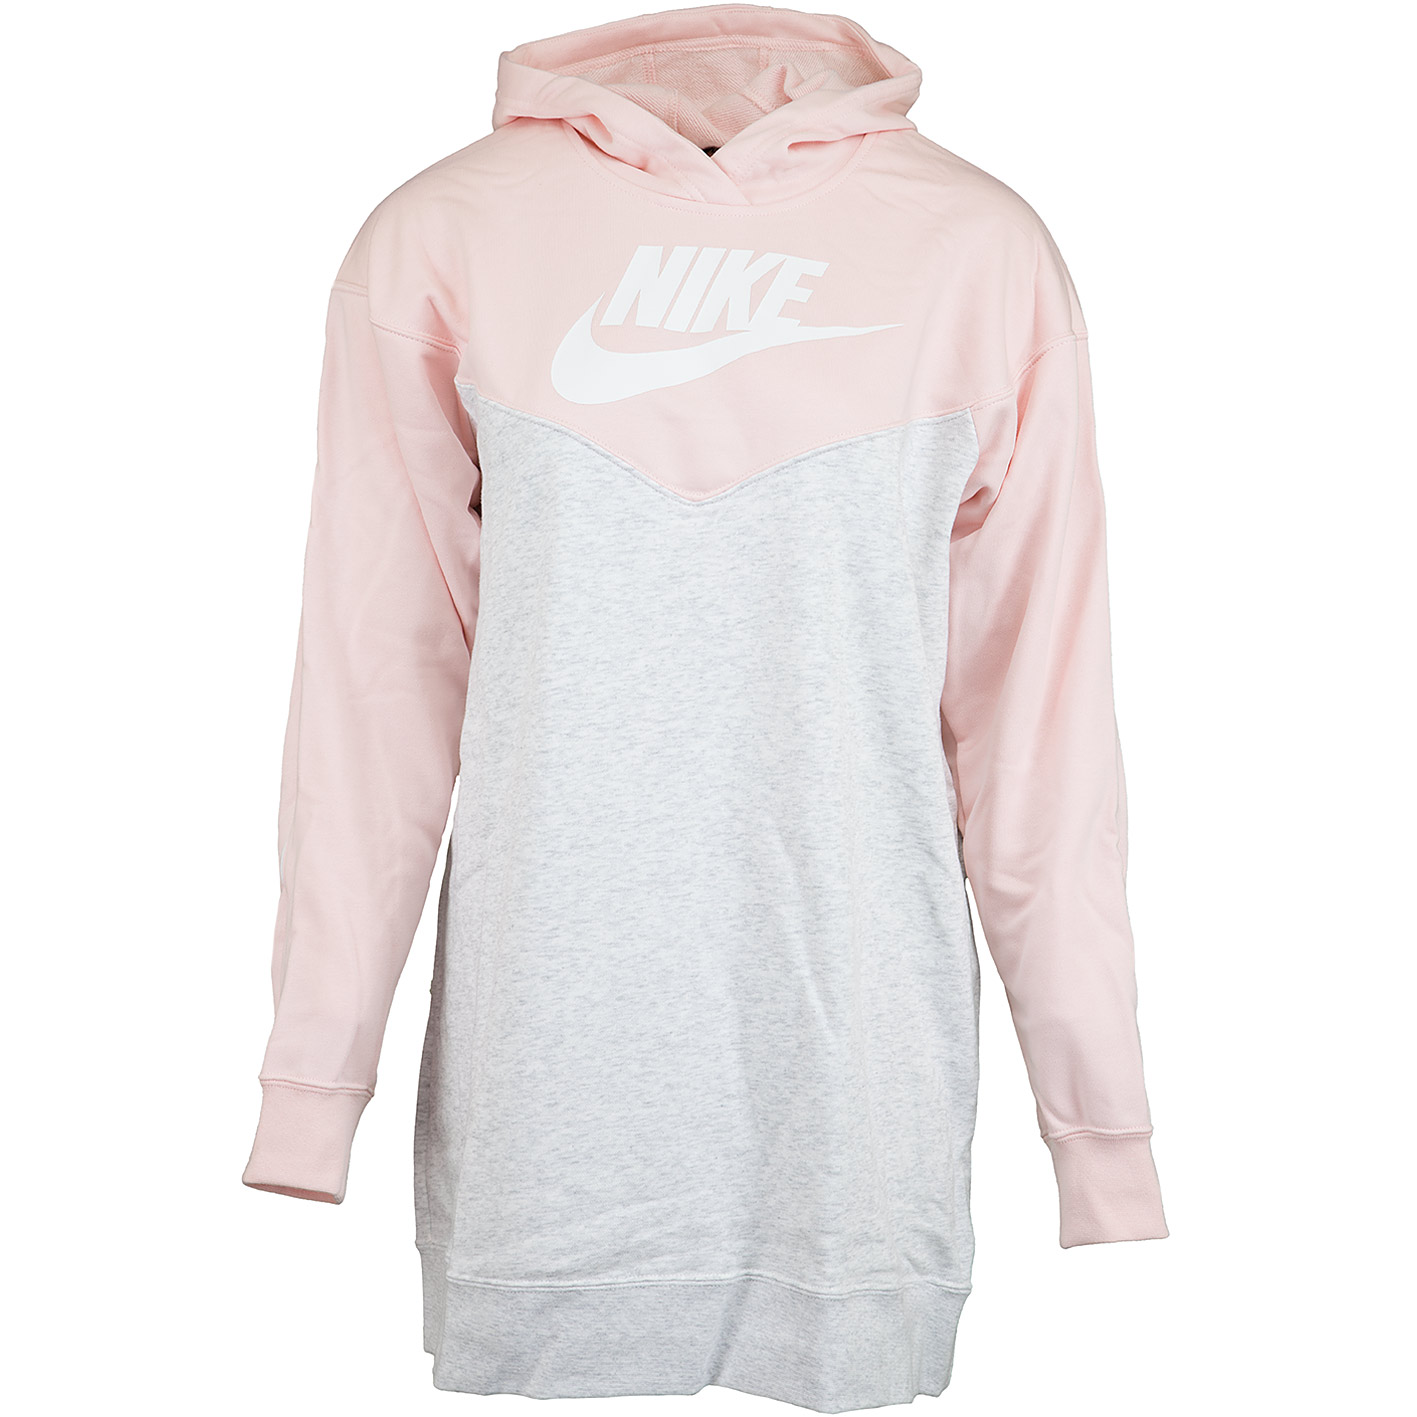 ☆ Nike Kleid Heritage Hood grau/rosa - hier bestellen!